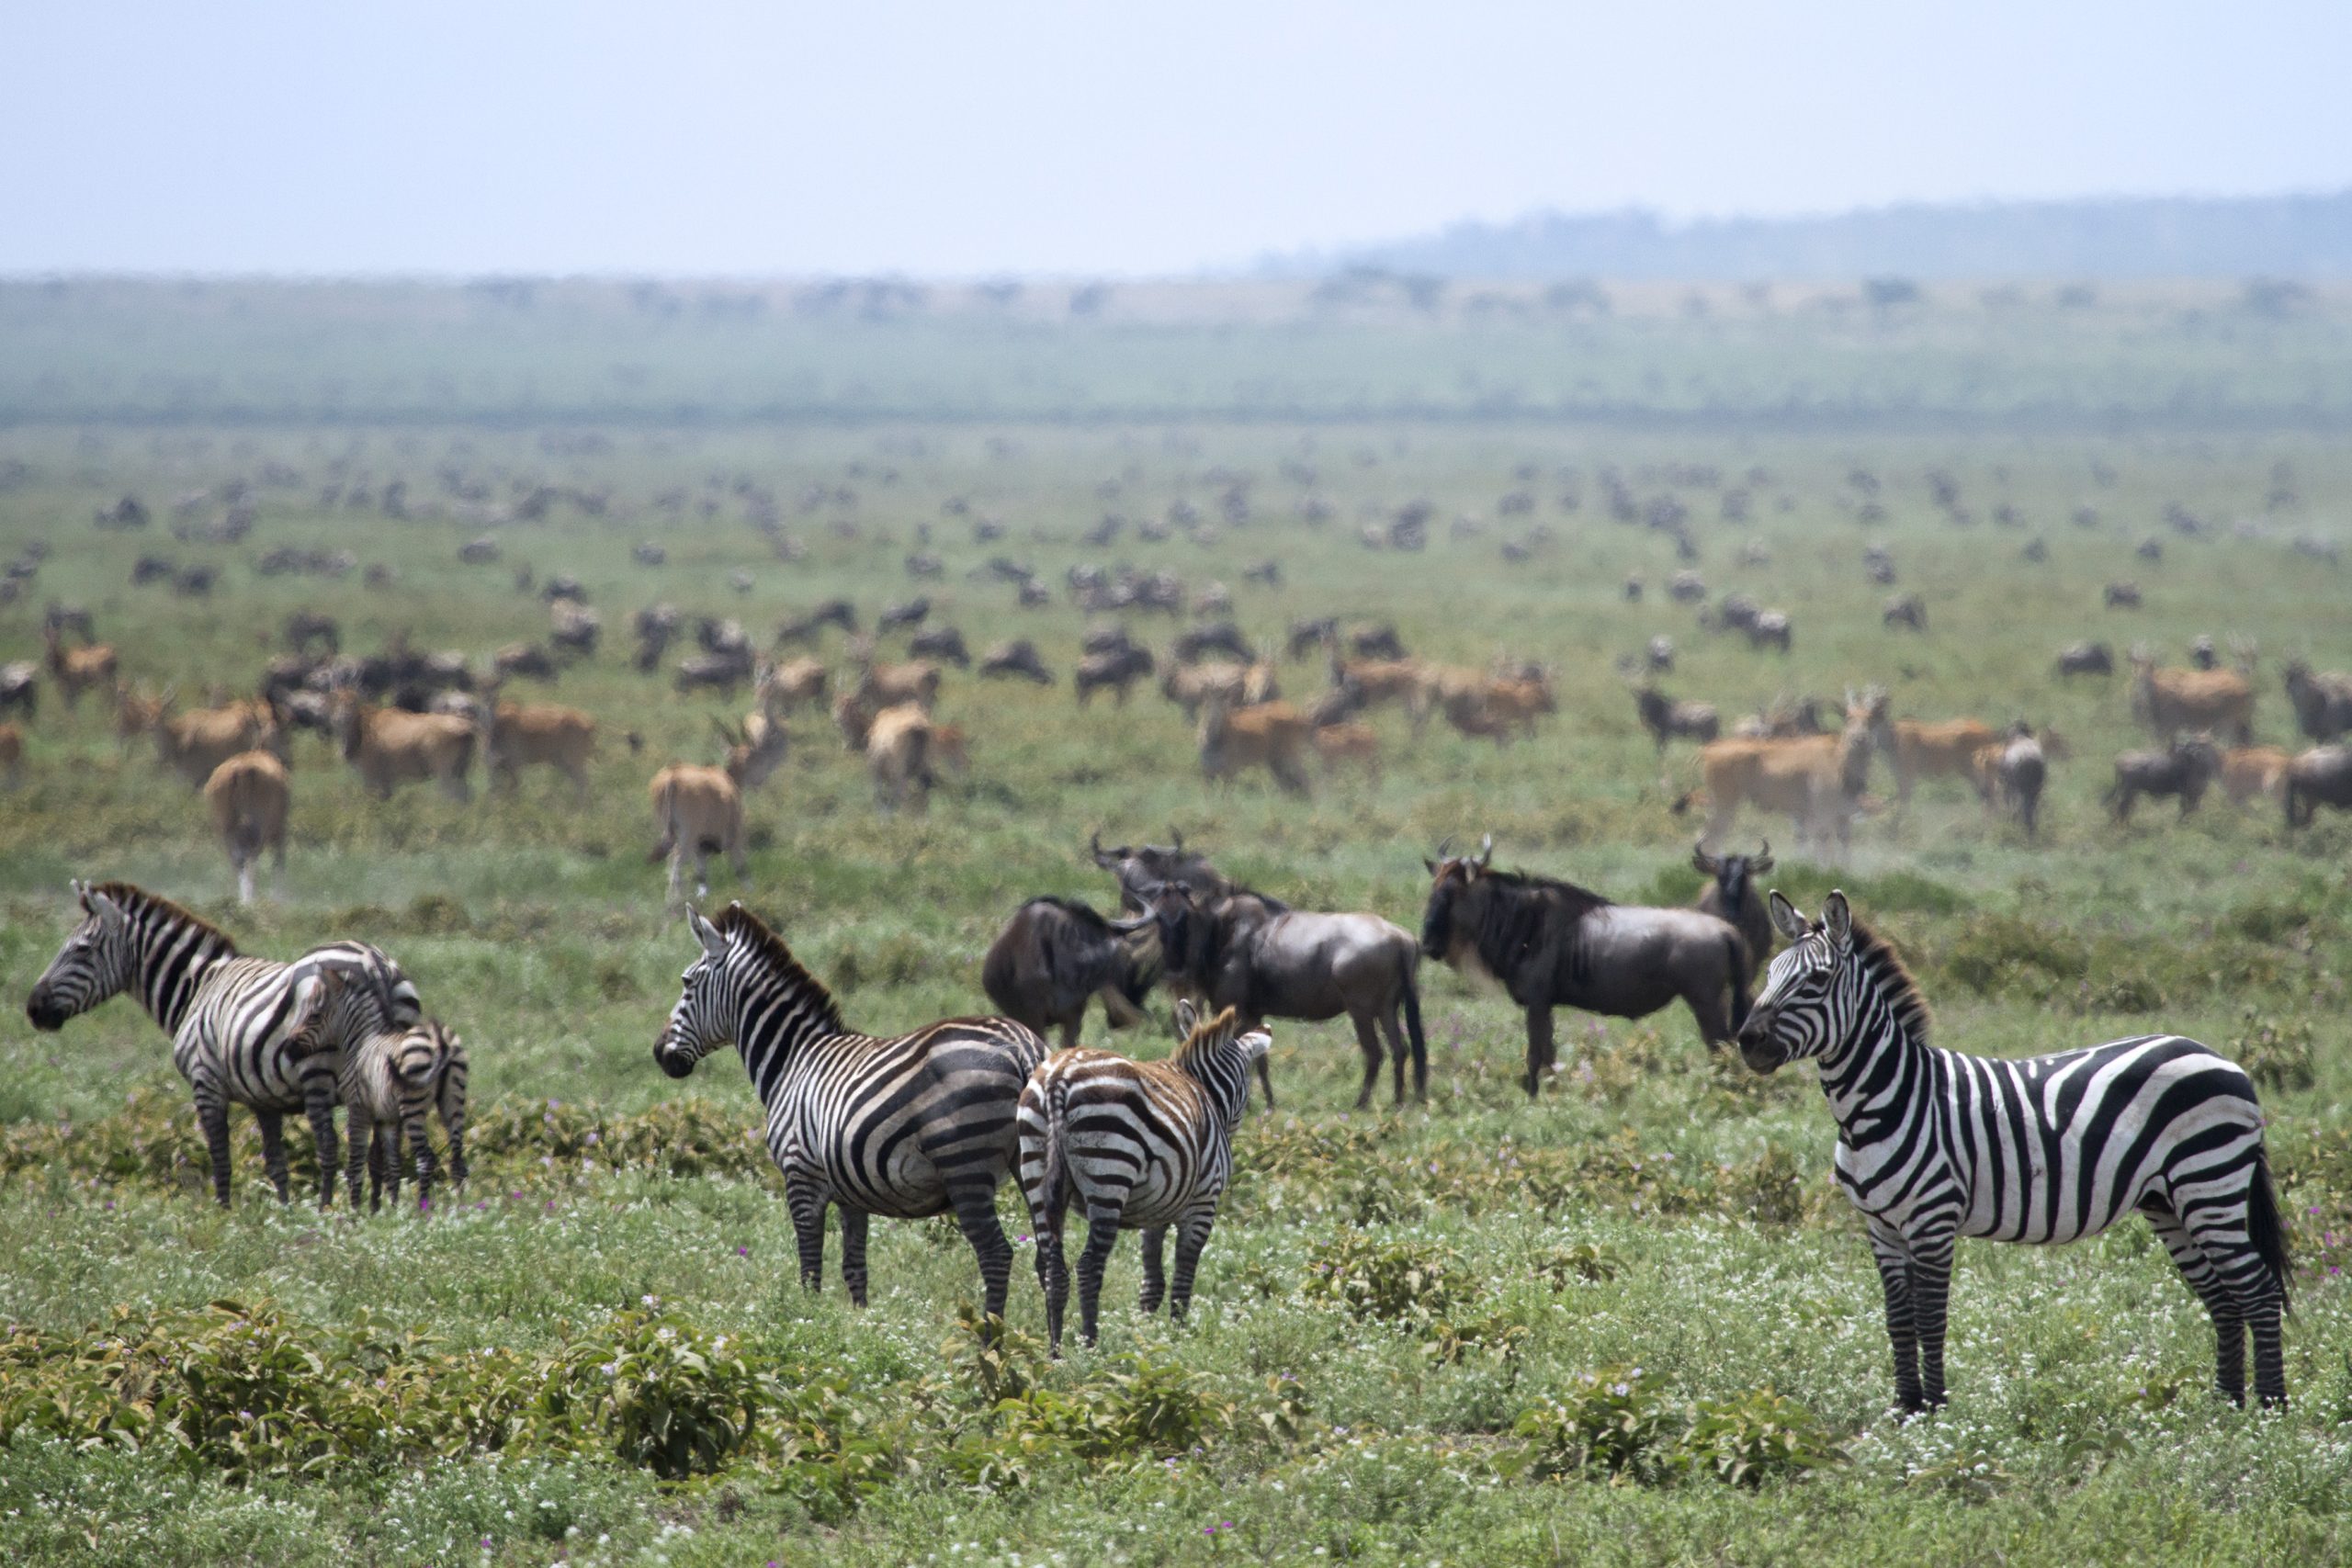 Great Wildebeest Migration. Copyright Sean Messham